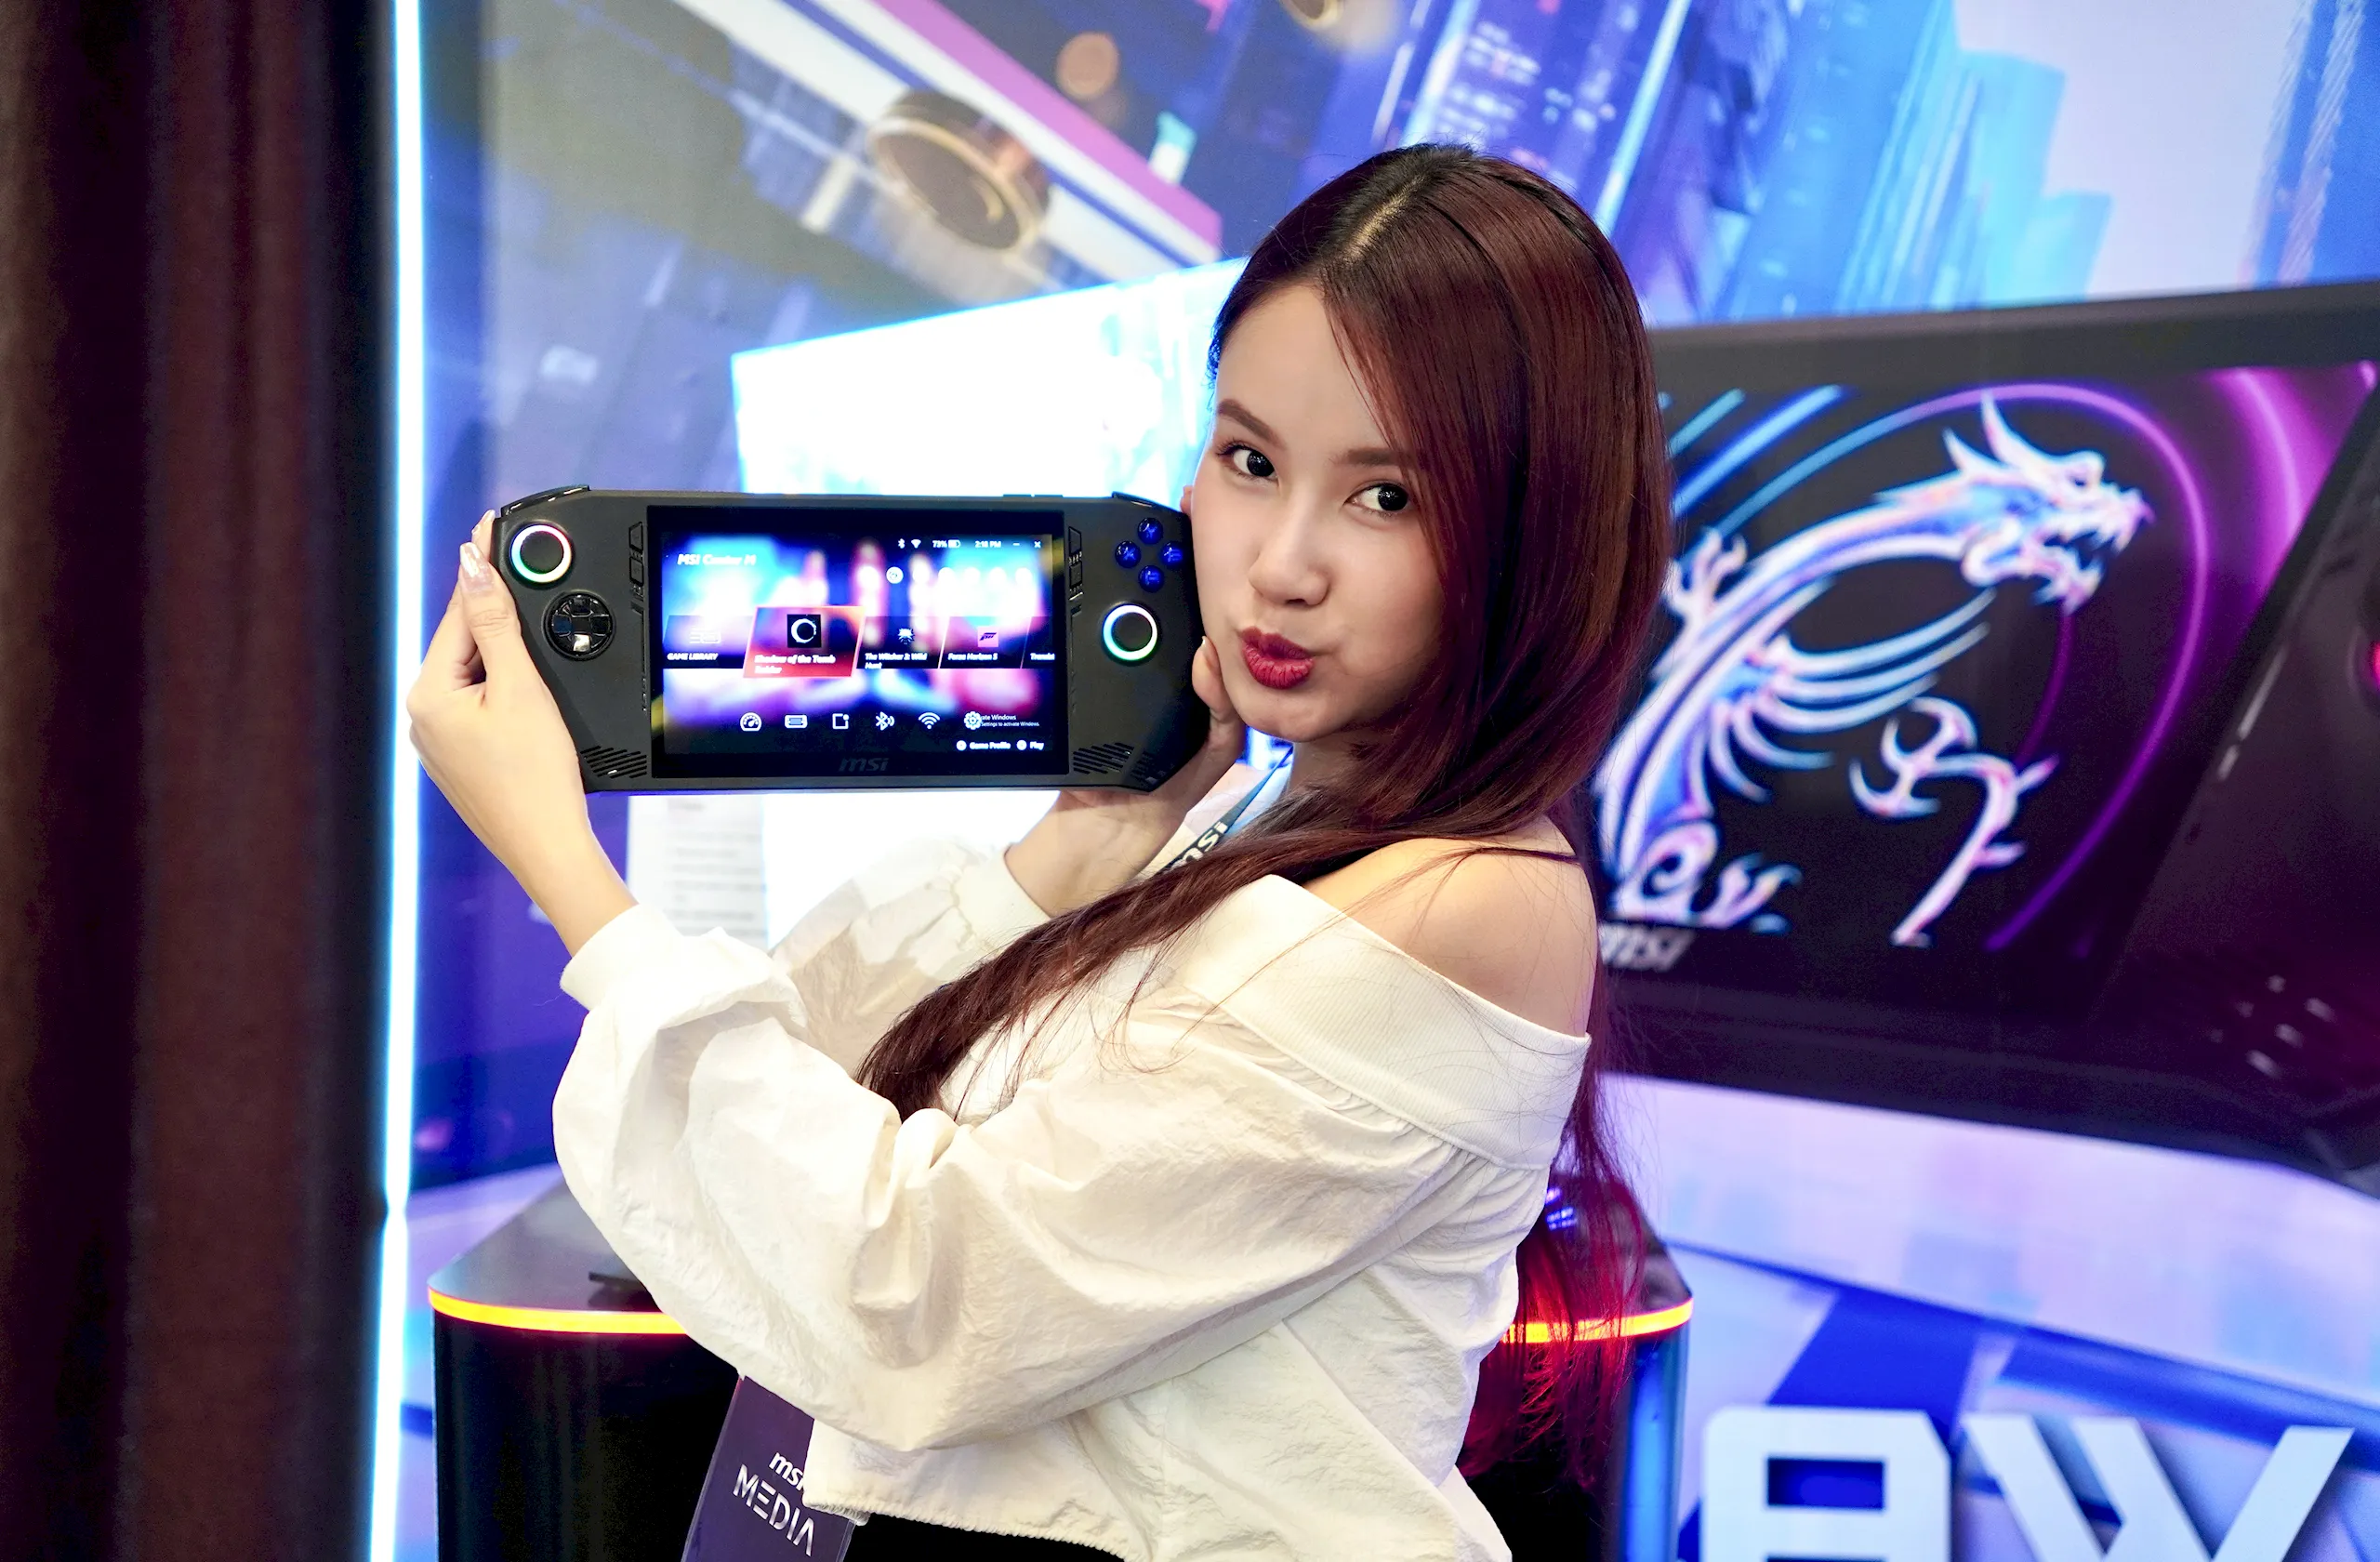 Máy chơi game cầm tay đầu tiên trang bị vi xử lí Intel Core Ultra – MSI Claw chính thức có mặt tại Việt Nam, giá từ 21 triệu đồng